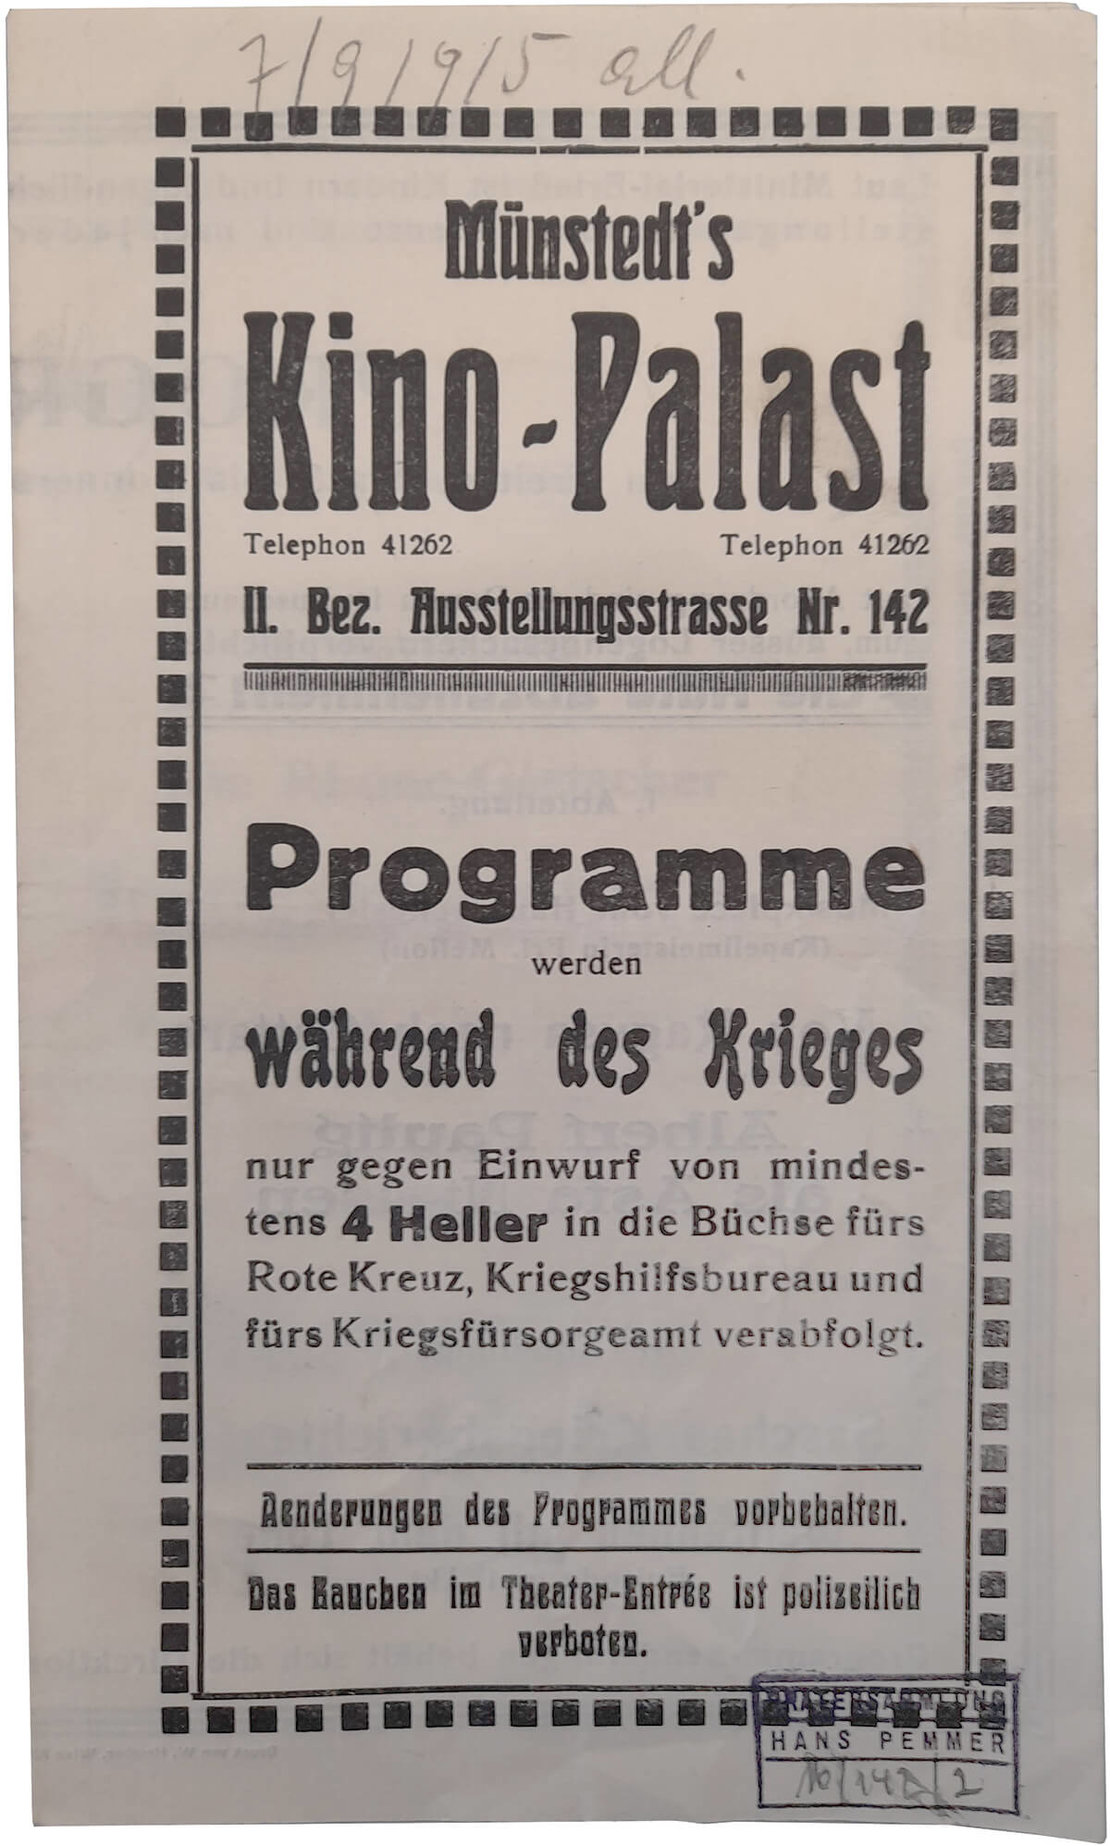 Programm des Münstedt’s Kino Palast aus dem Jahr 1915, Wien Museum 